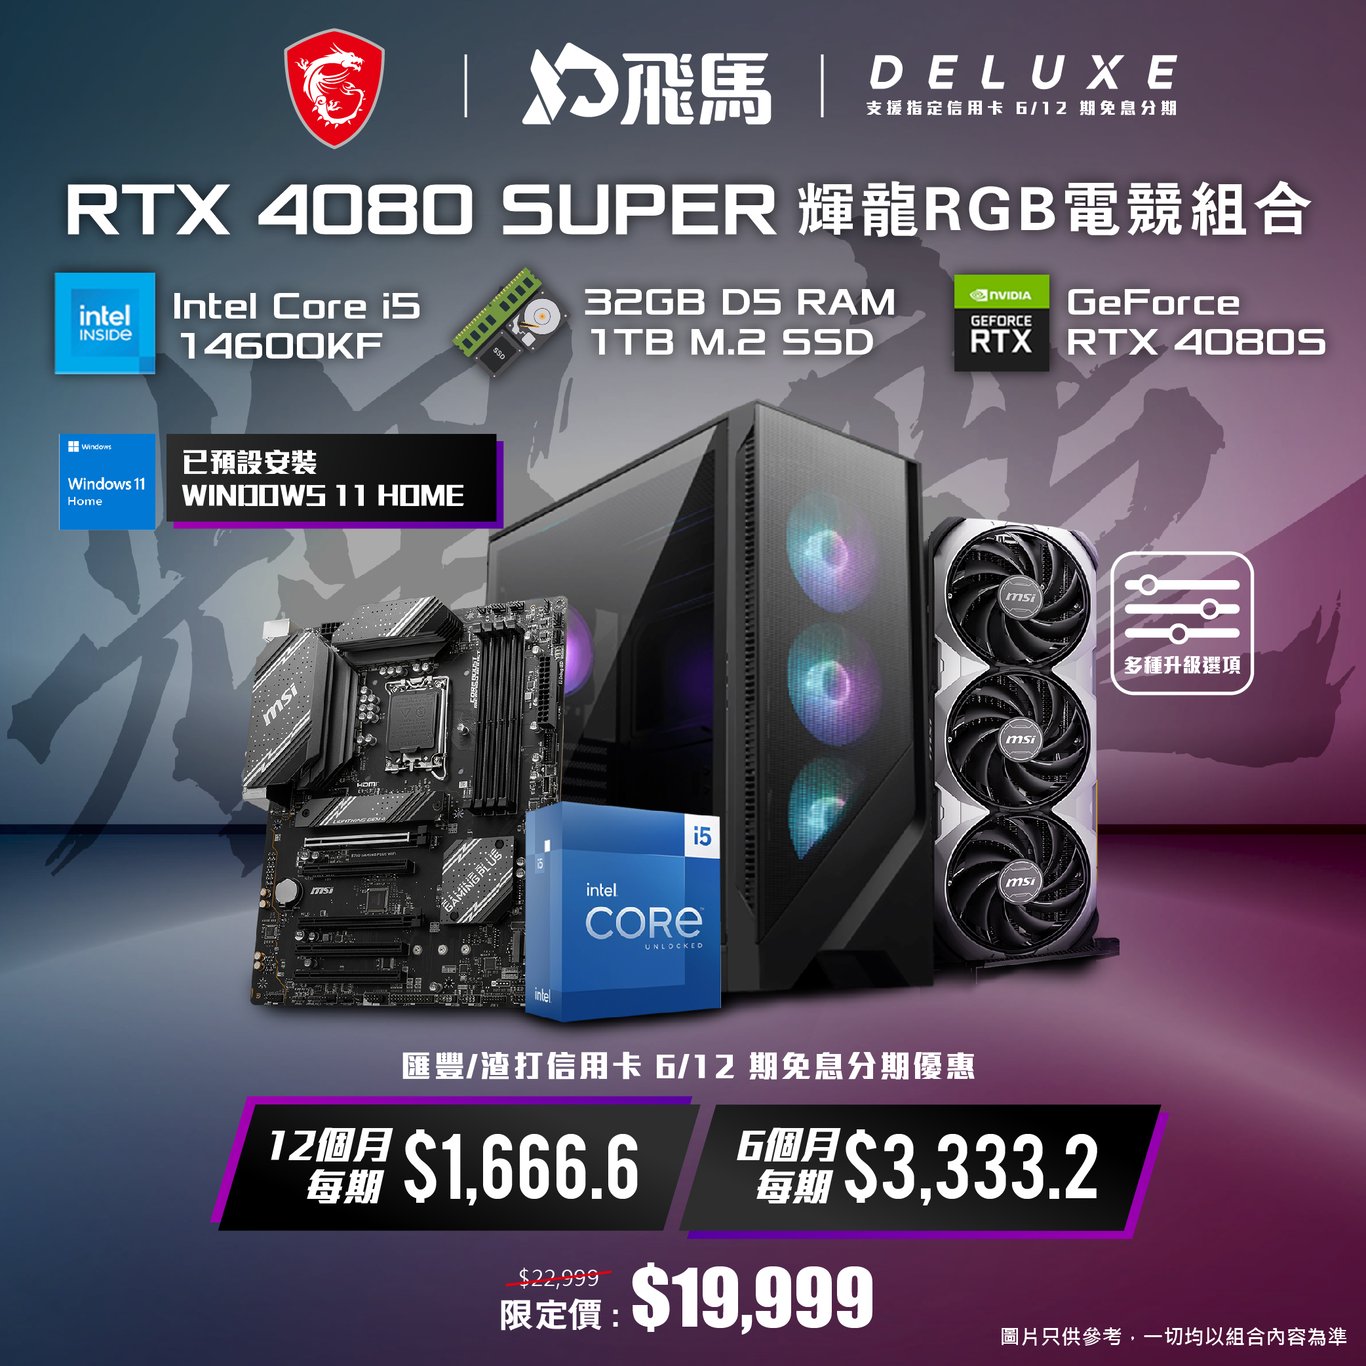 【RGB 電競】RTX 4080 Super 輝龍 RGB 電競組合 - DELUXE 